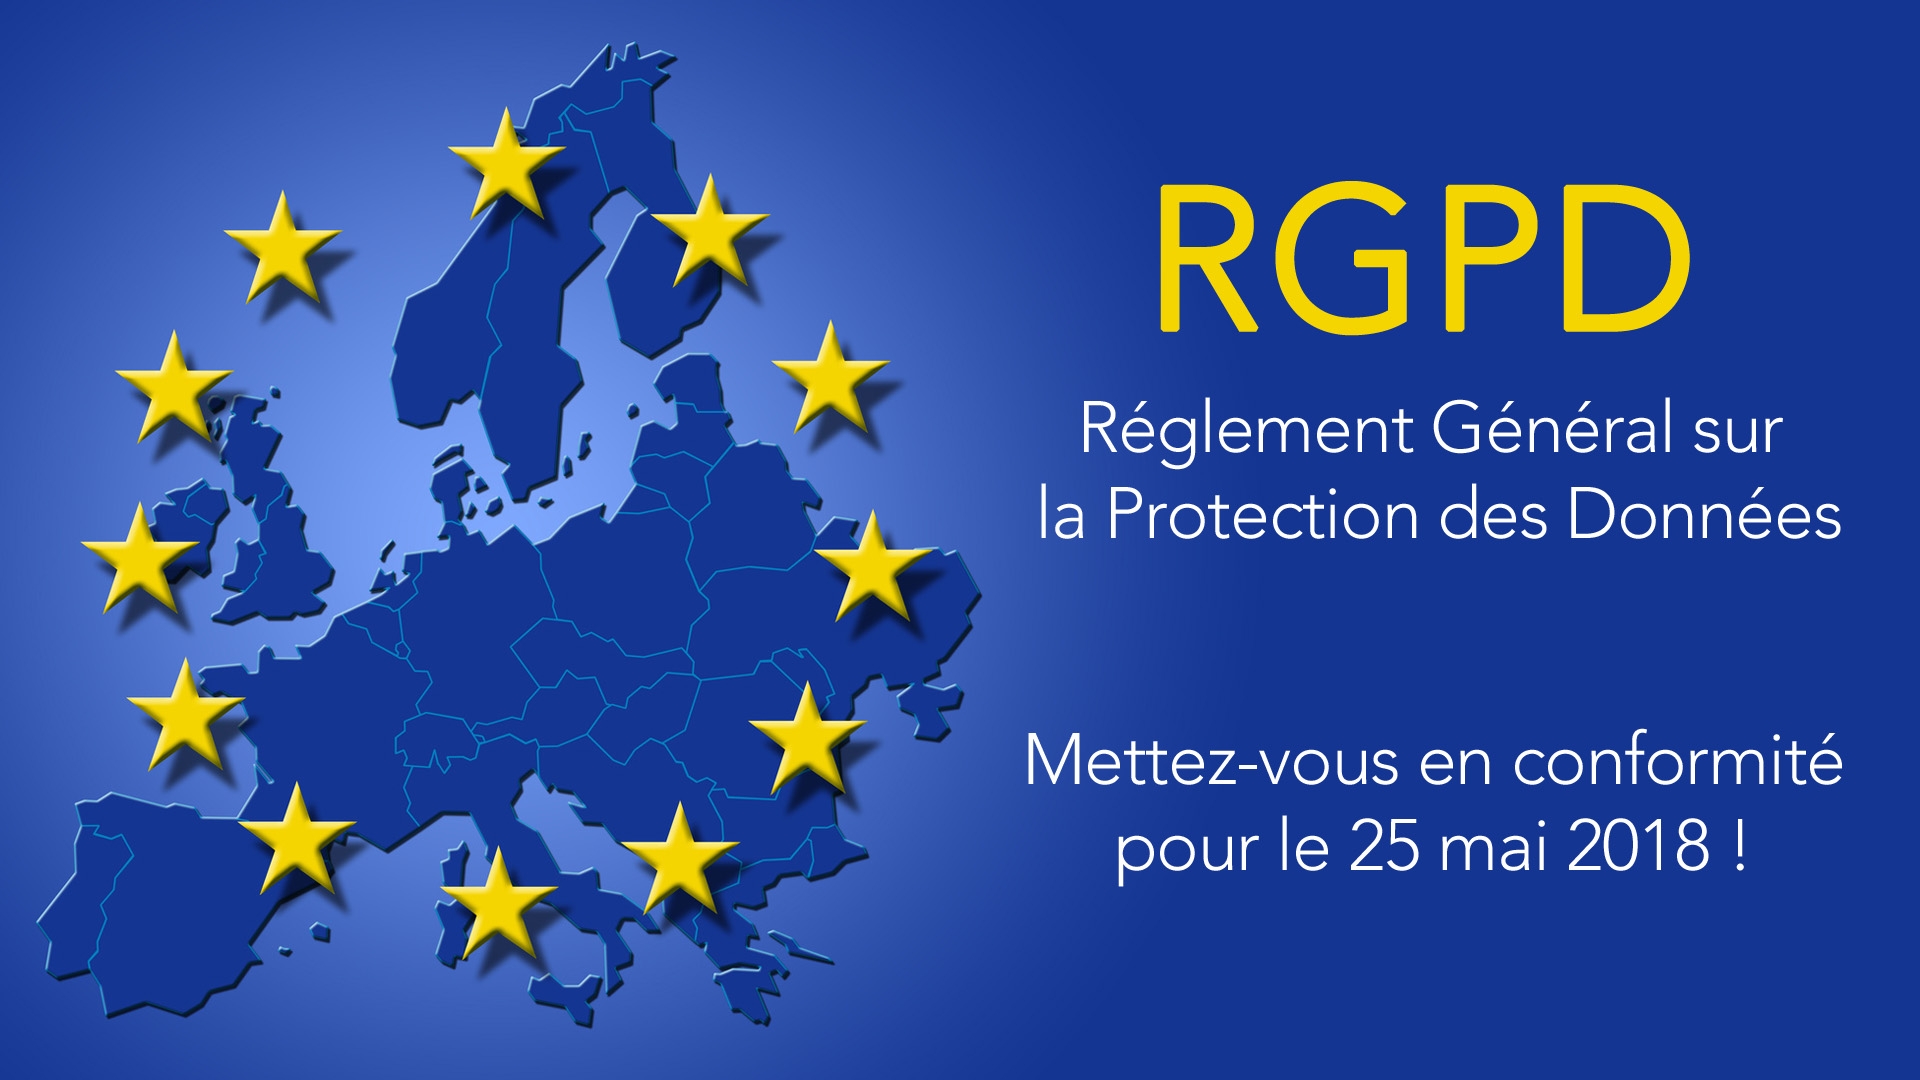 Mettez votre site en conformité avec le RGPD (Règlement Général sur la Protection des Données)